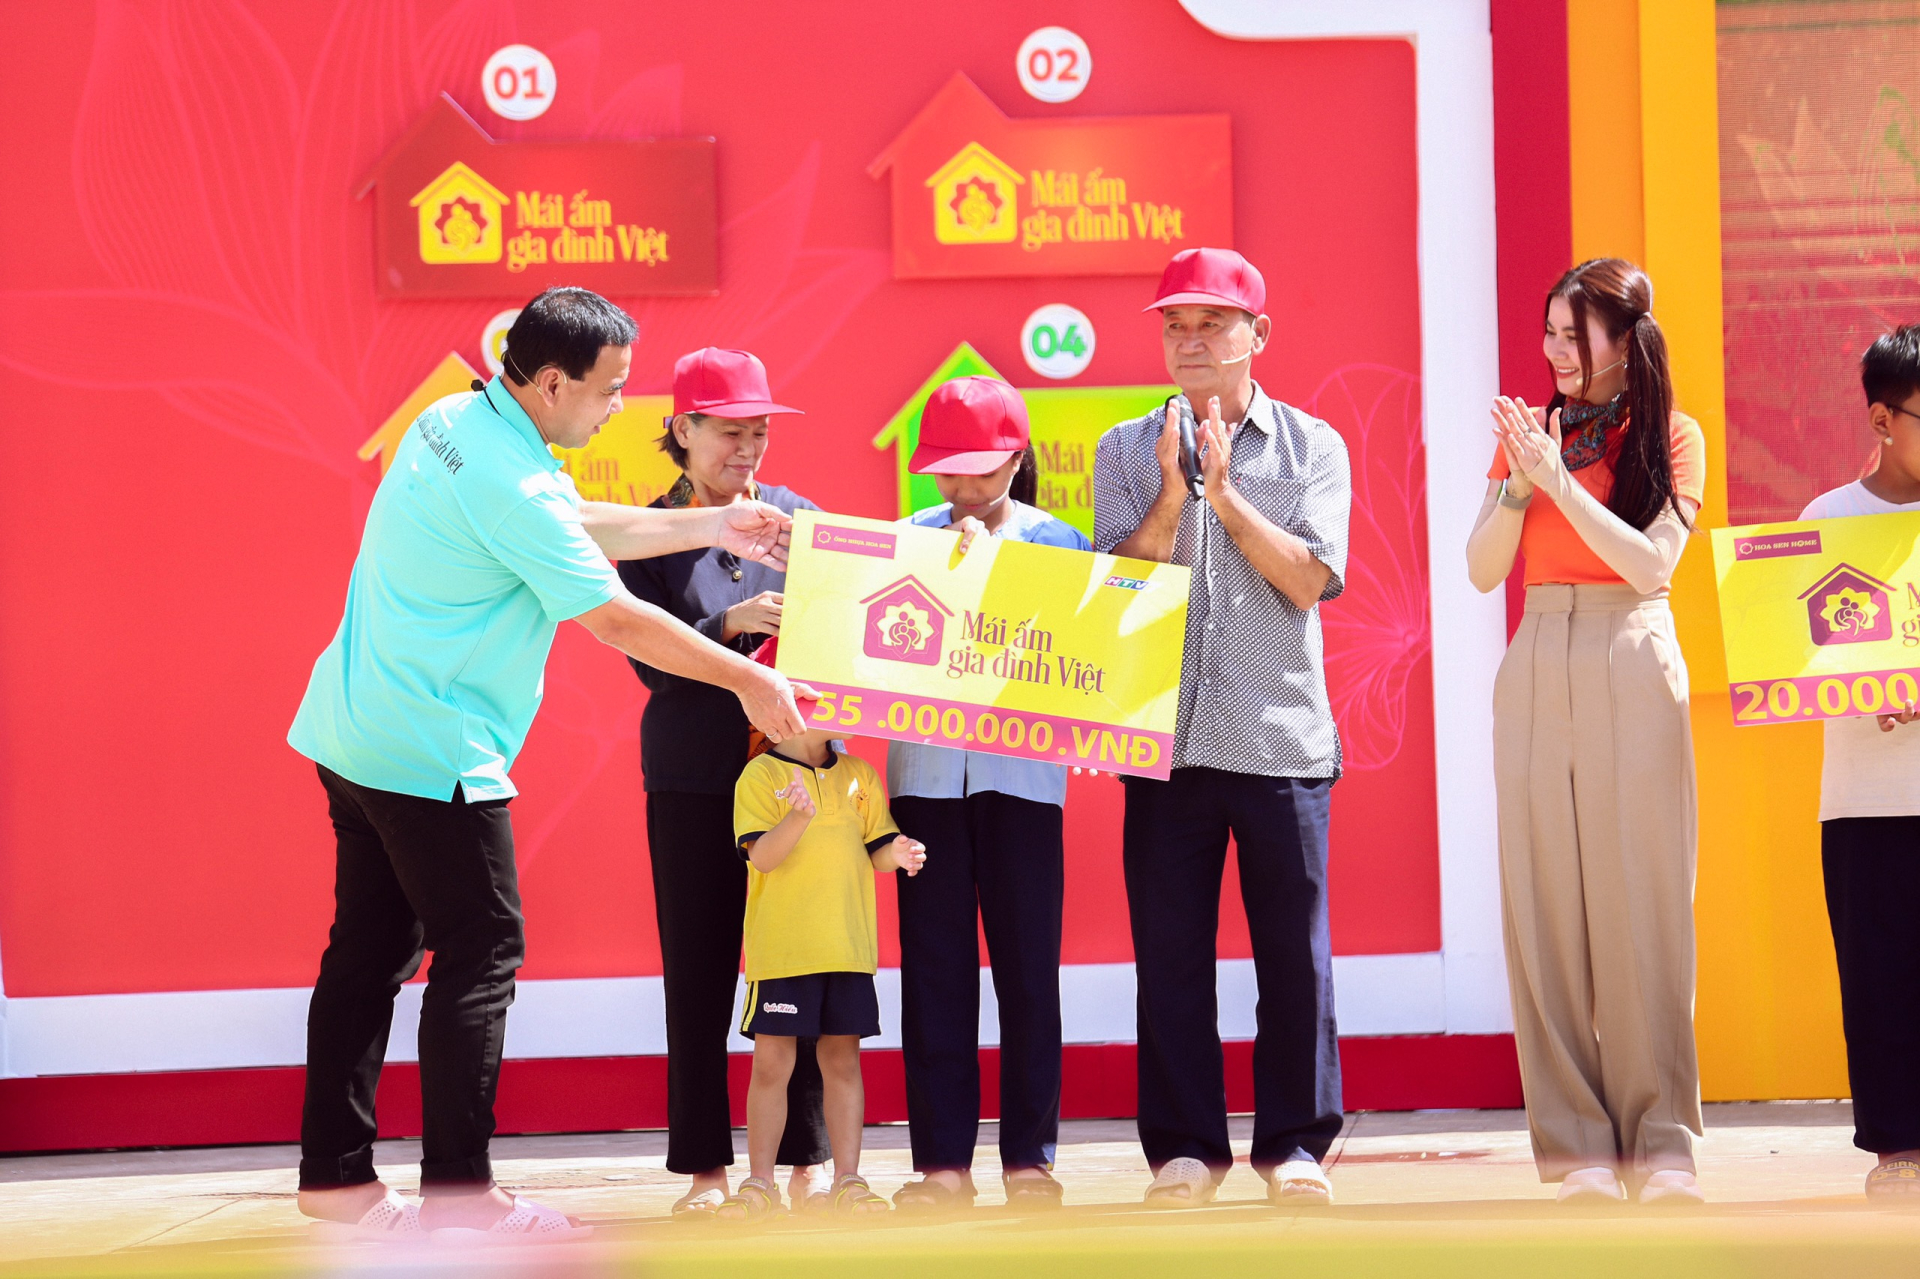 Kha Ly, Hồ Quang Hiếu hợp sức mang về 90 triệu đồng cho trẻ mồ côi - ảnh 6